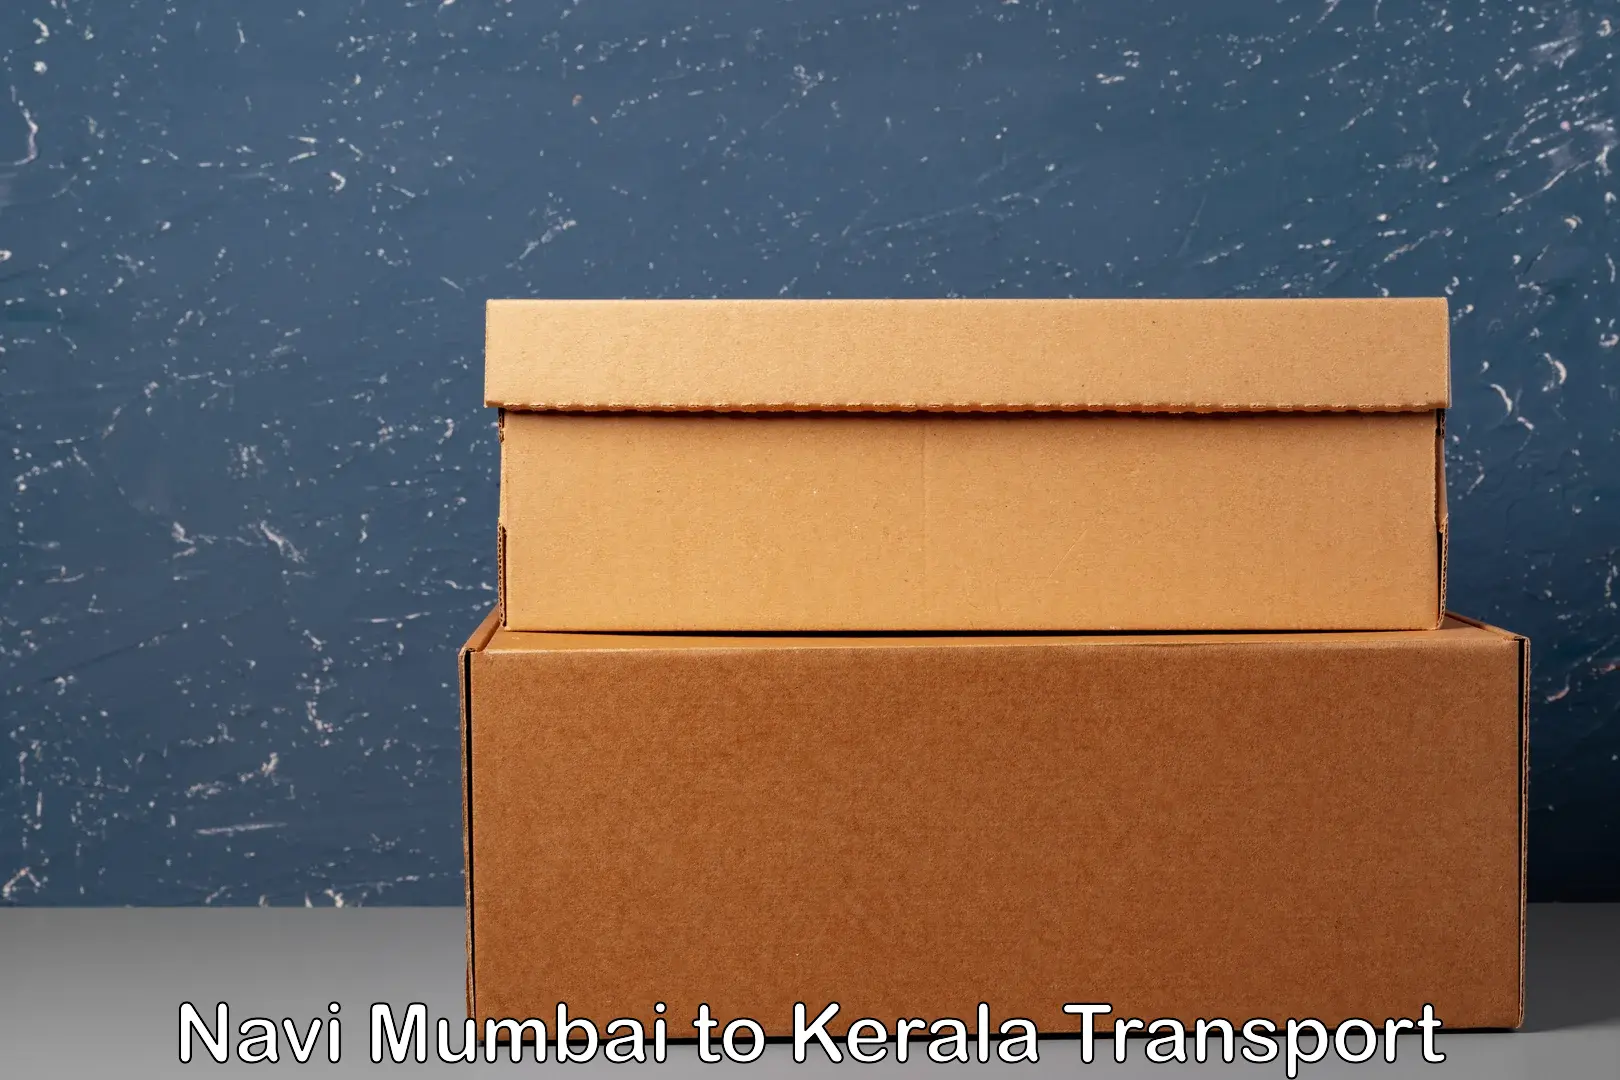 Online transport service Navi Mumbai to Chungatra